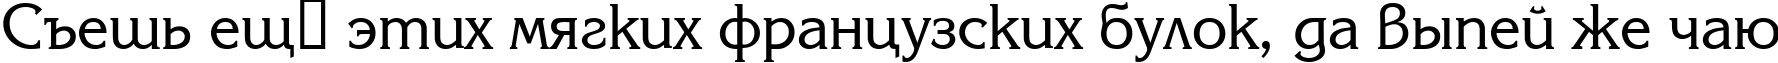 Пример написания шрифтом Coriolan текста на русском